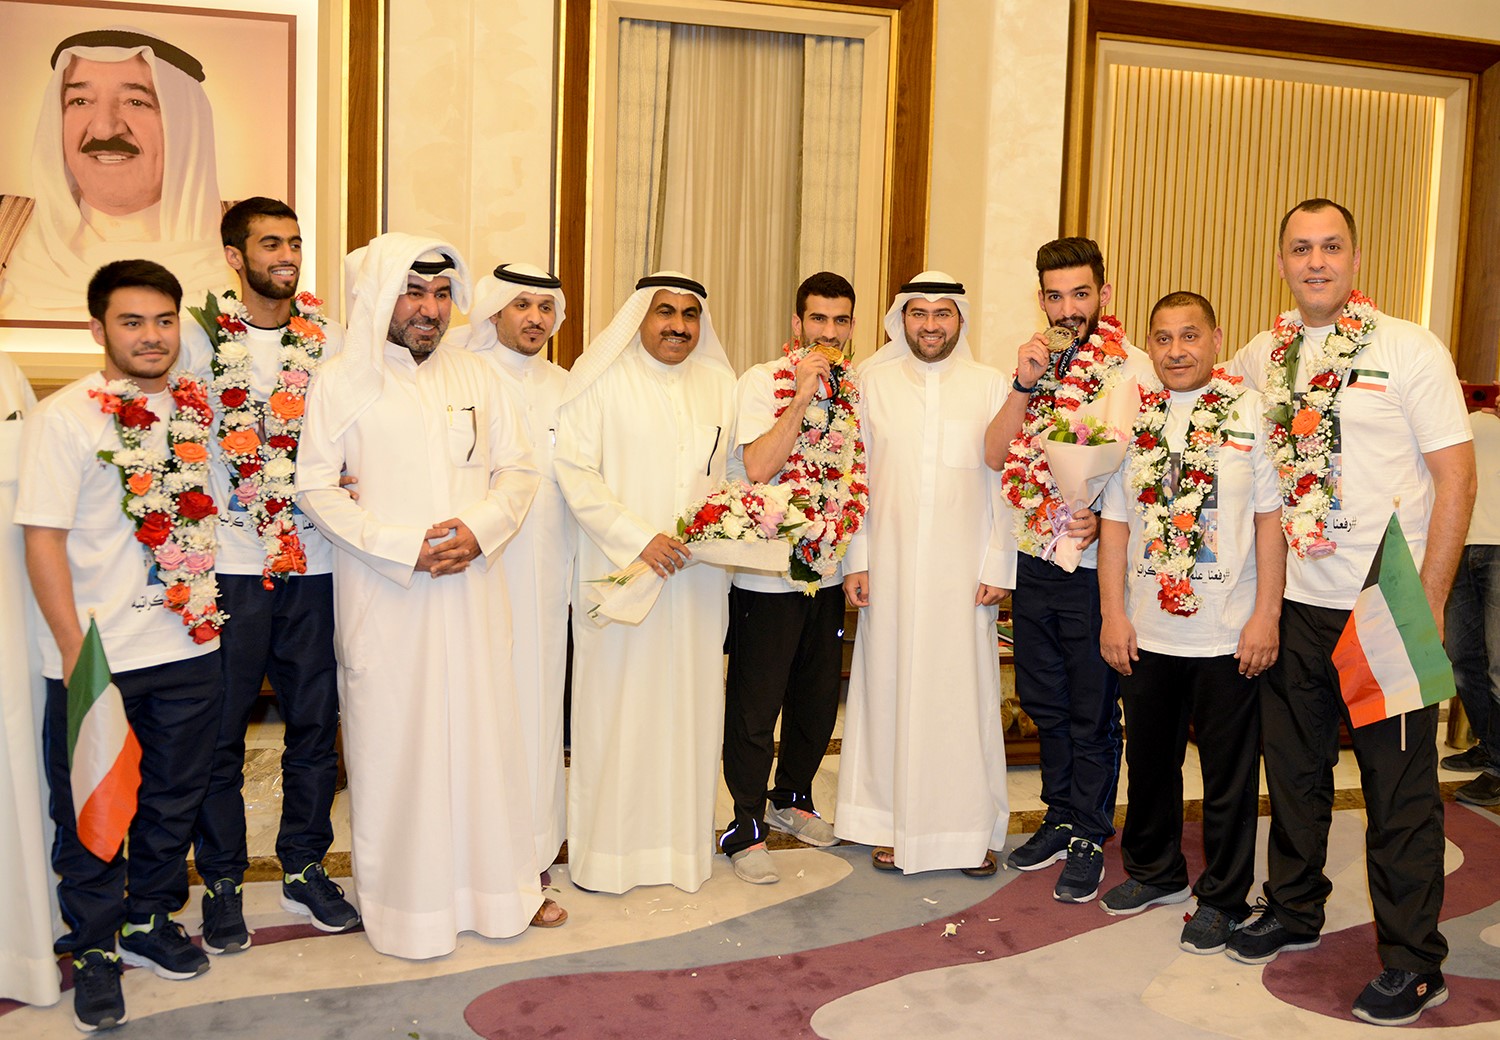 لاعبان كويتيان في الكراتيه يعربان عن فخرهما بحصول كل منهما على ميدالية في "أسياد 2018"